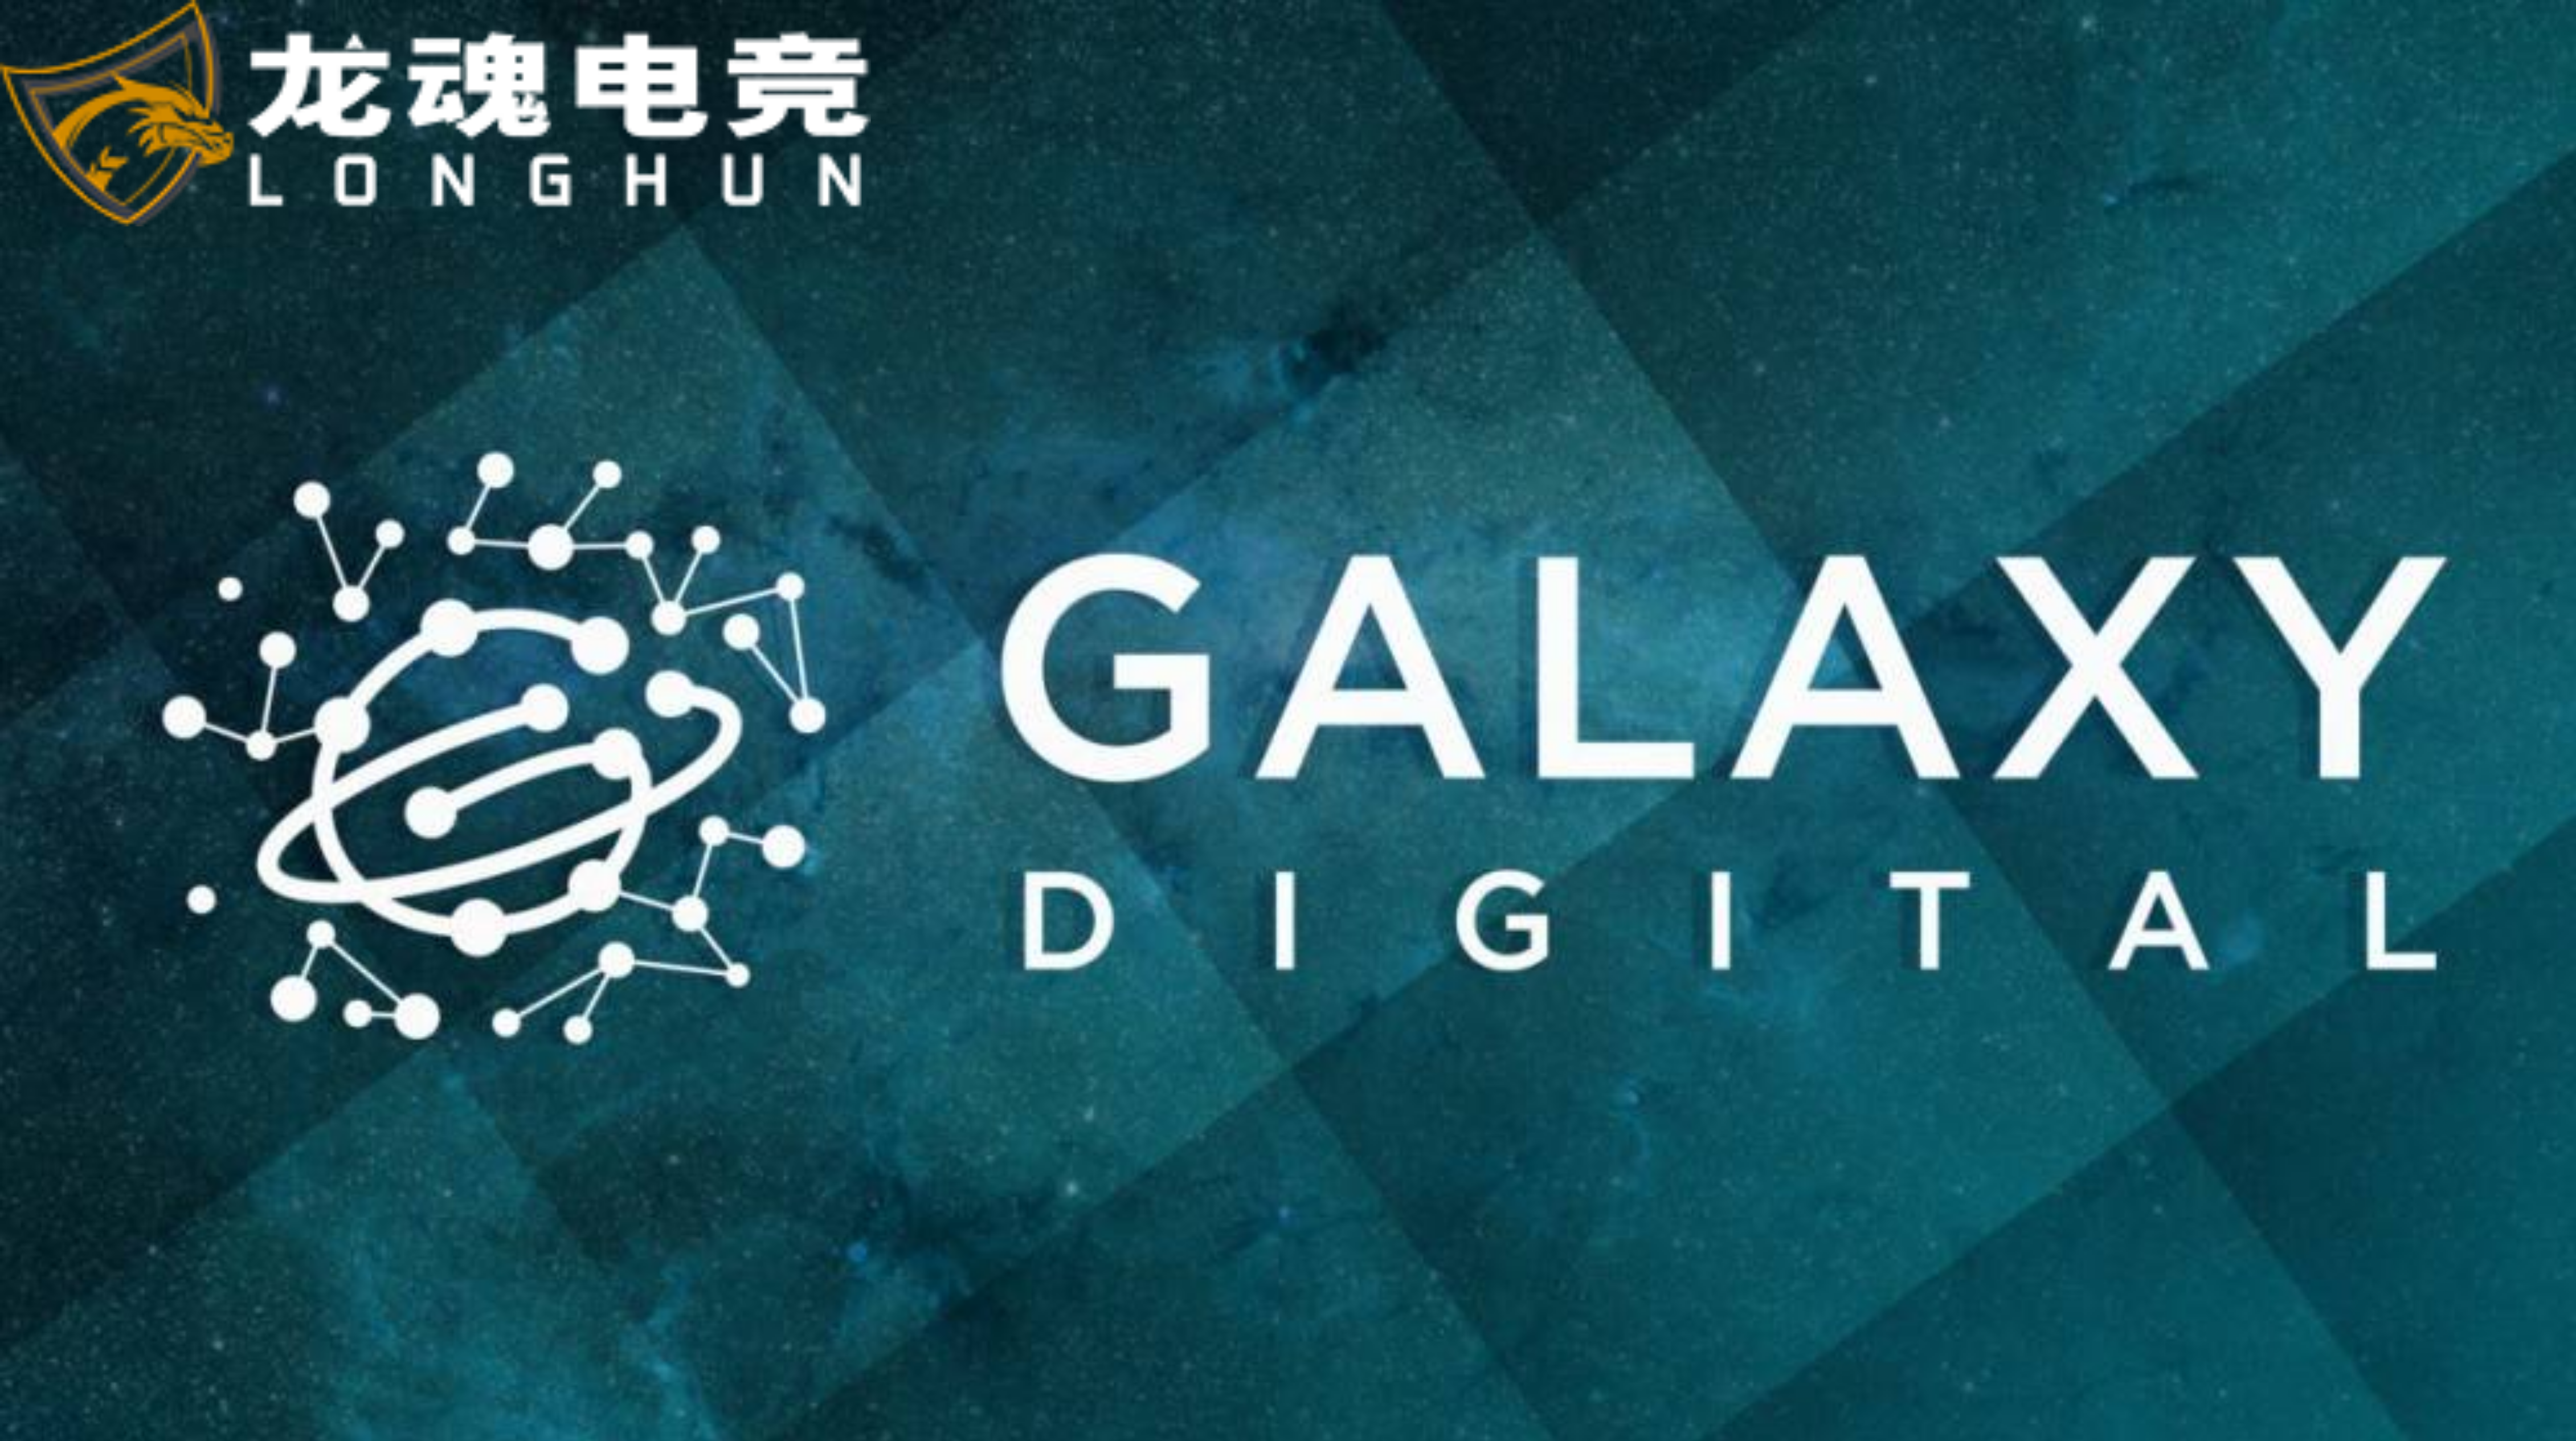  龙魂电竞-加密投资机构Galaxy Digital将推出以太坊基金 | 龙魂电竞